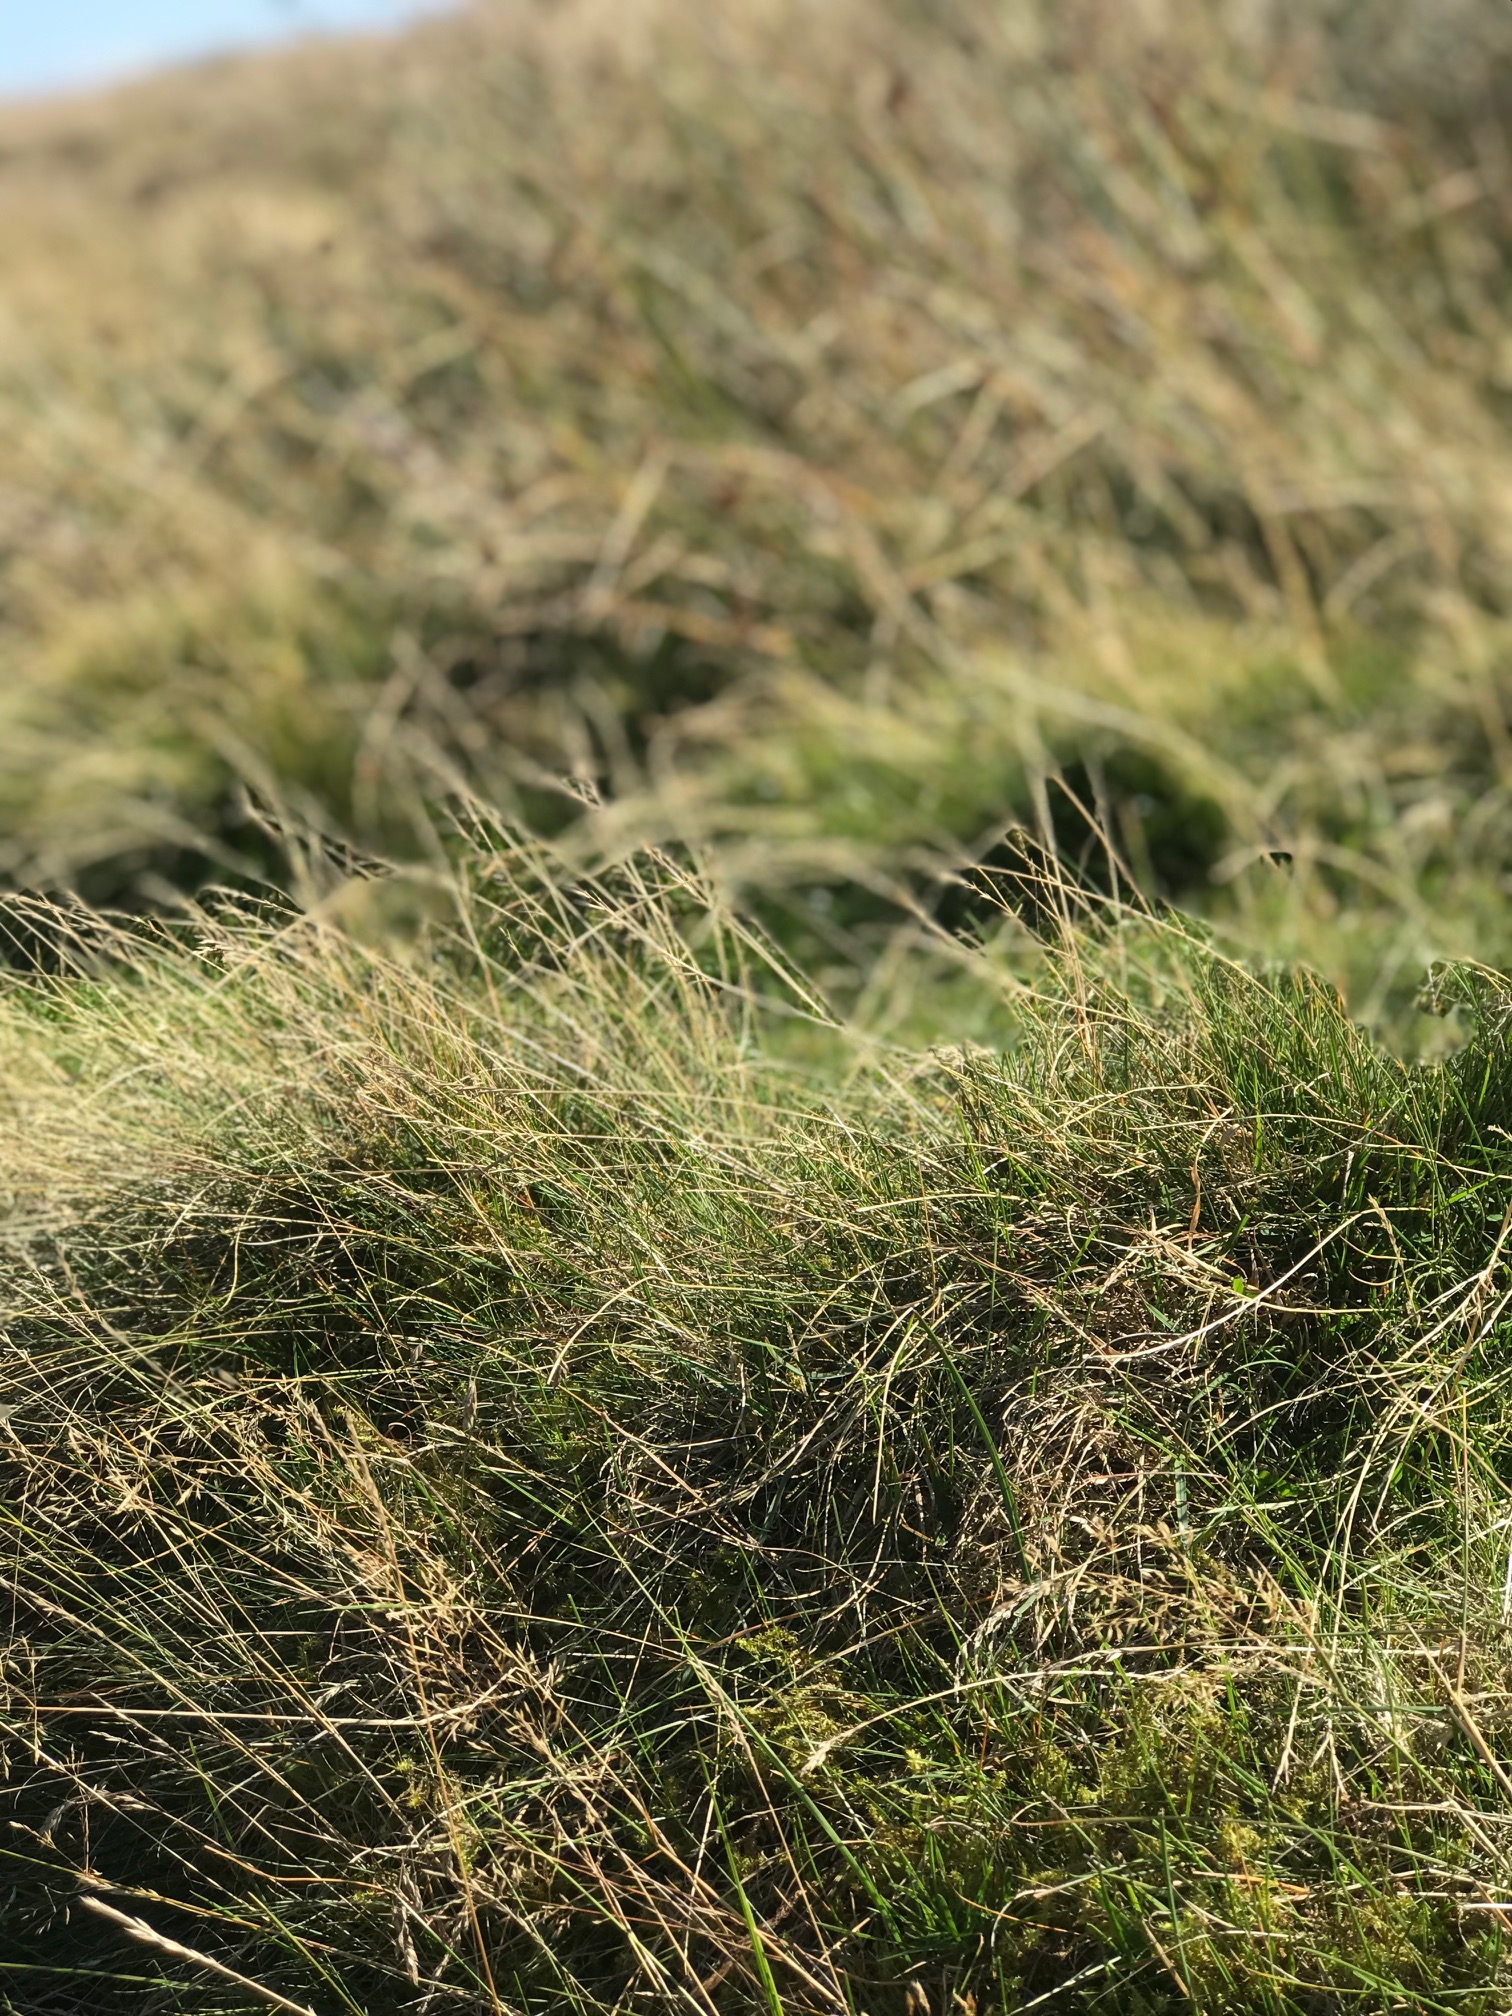 alt="Yorkshire grass close-up"